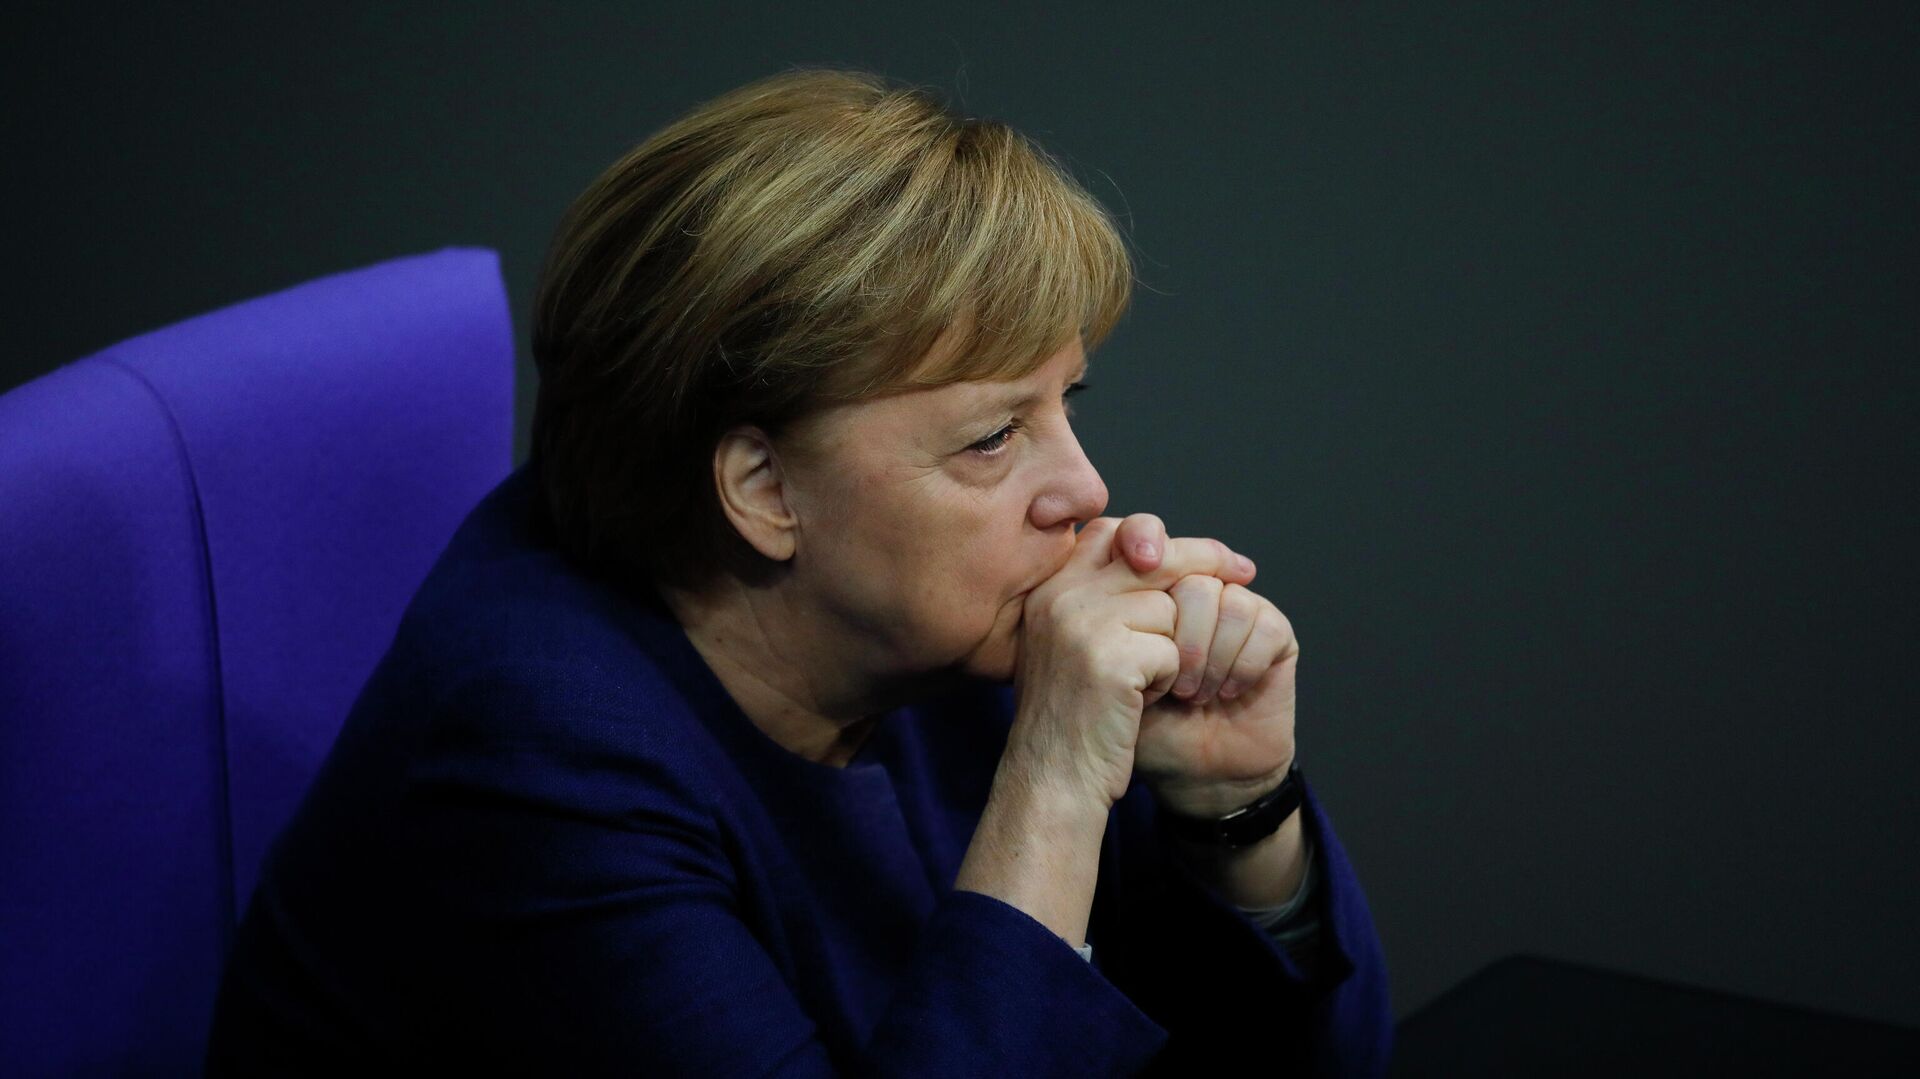 Канцлер Германи Ангела Меркель в Бундестаге, Берлин  - РИА Новости, 1920, 23.03.2021